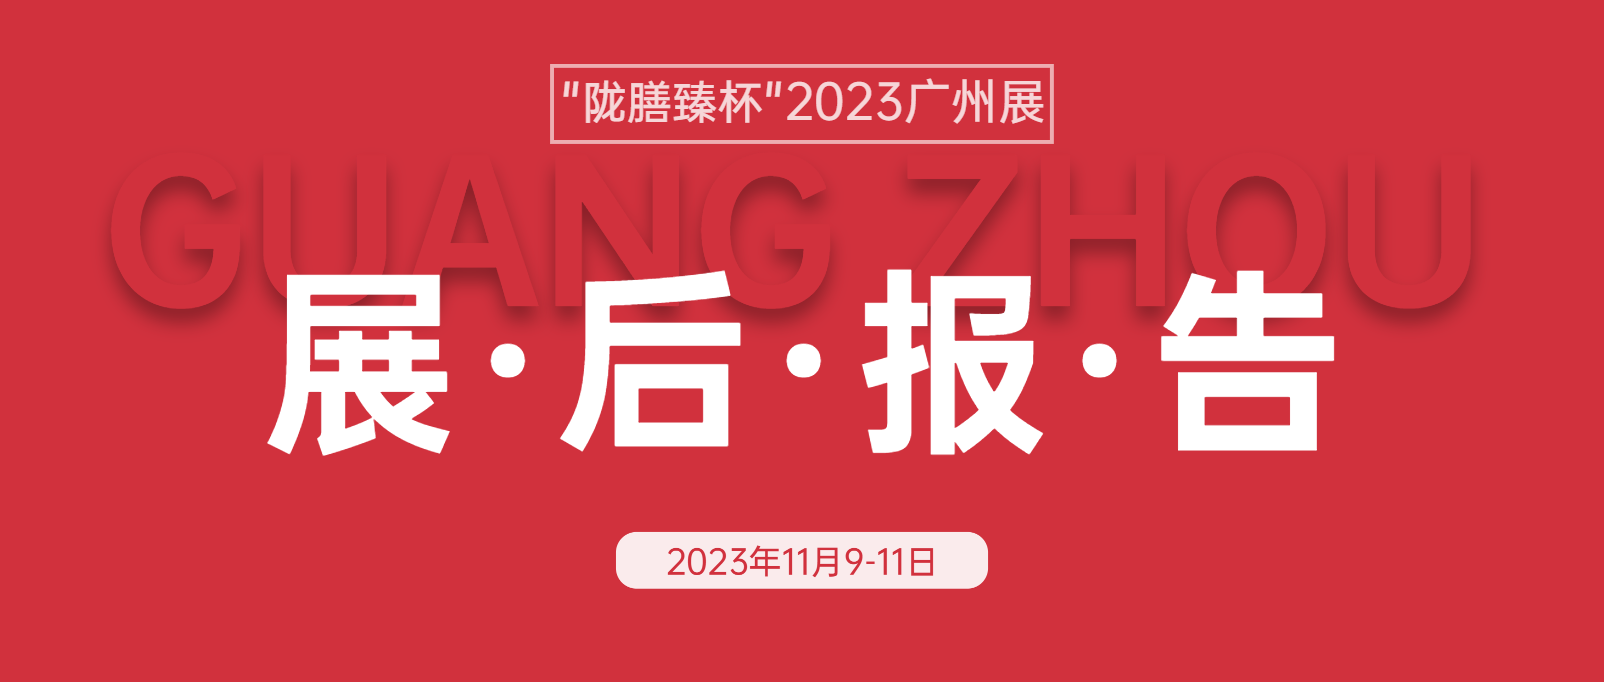 展后报告|“陇膳臻杯”2023华南（广州）火锅食材用品展览会